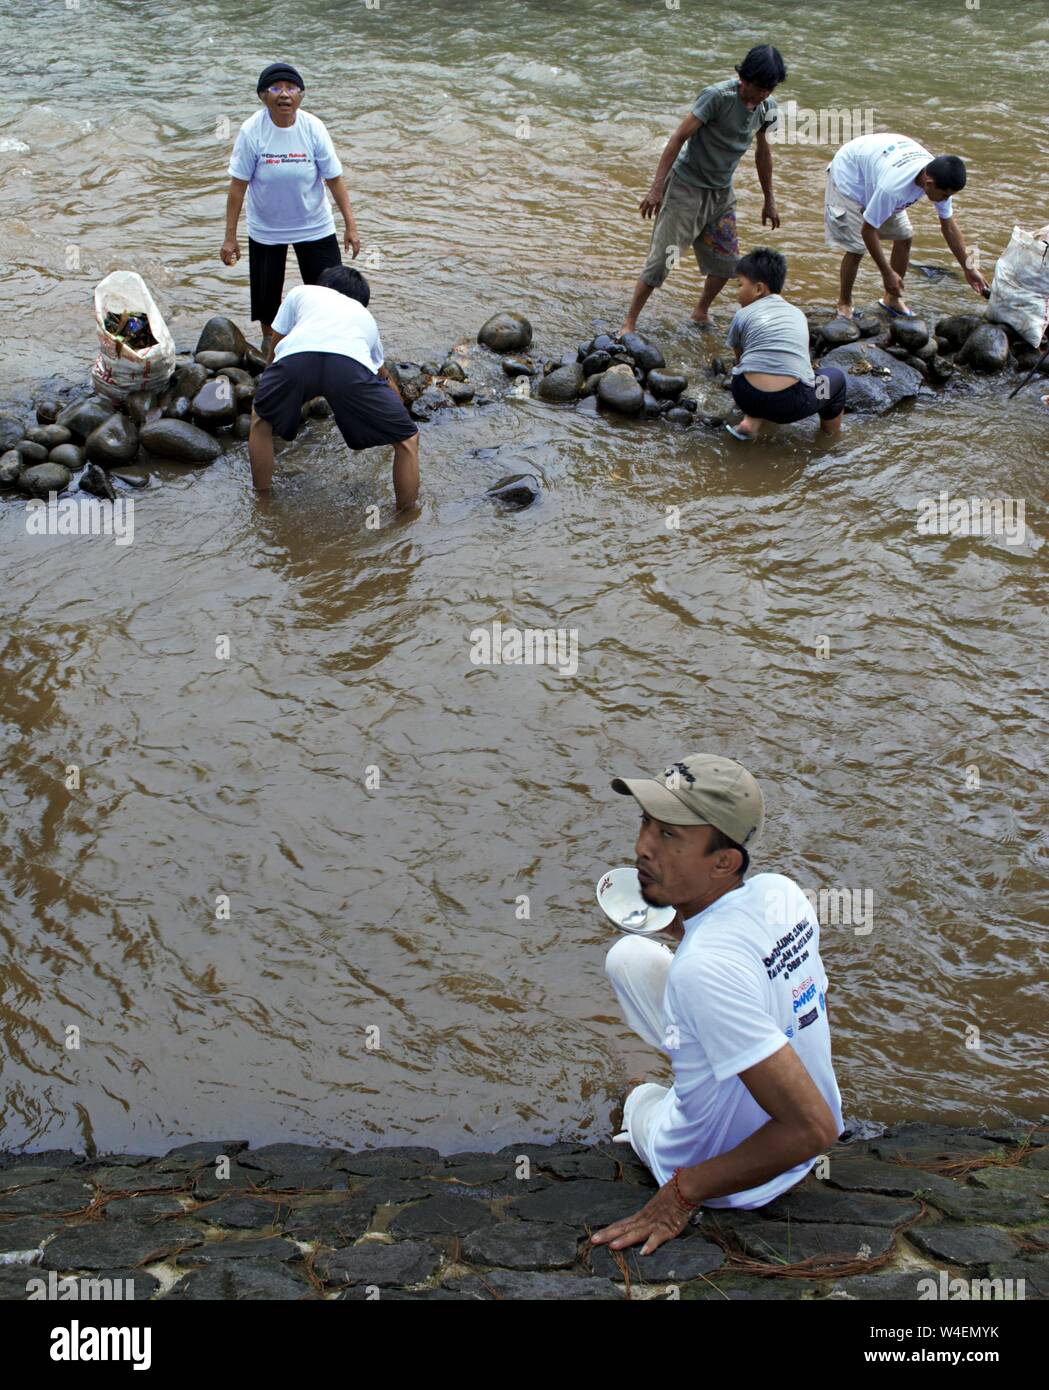 Bogor, Java ouest, Indonésie - Juillet 2019 : un groupe de personnes organiser des pierres pour construire un barrage dans la rivière Ciliwung, alors qu'un homme est assis sur le côté de la rivière. Banque D'Images